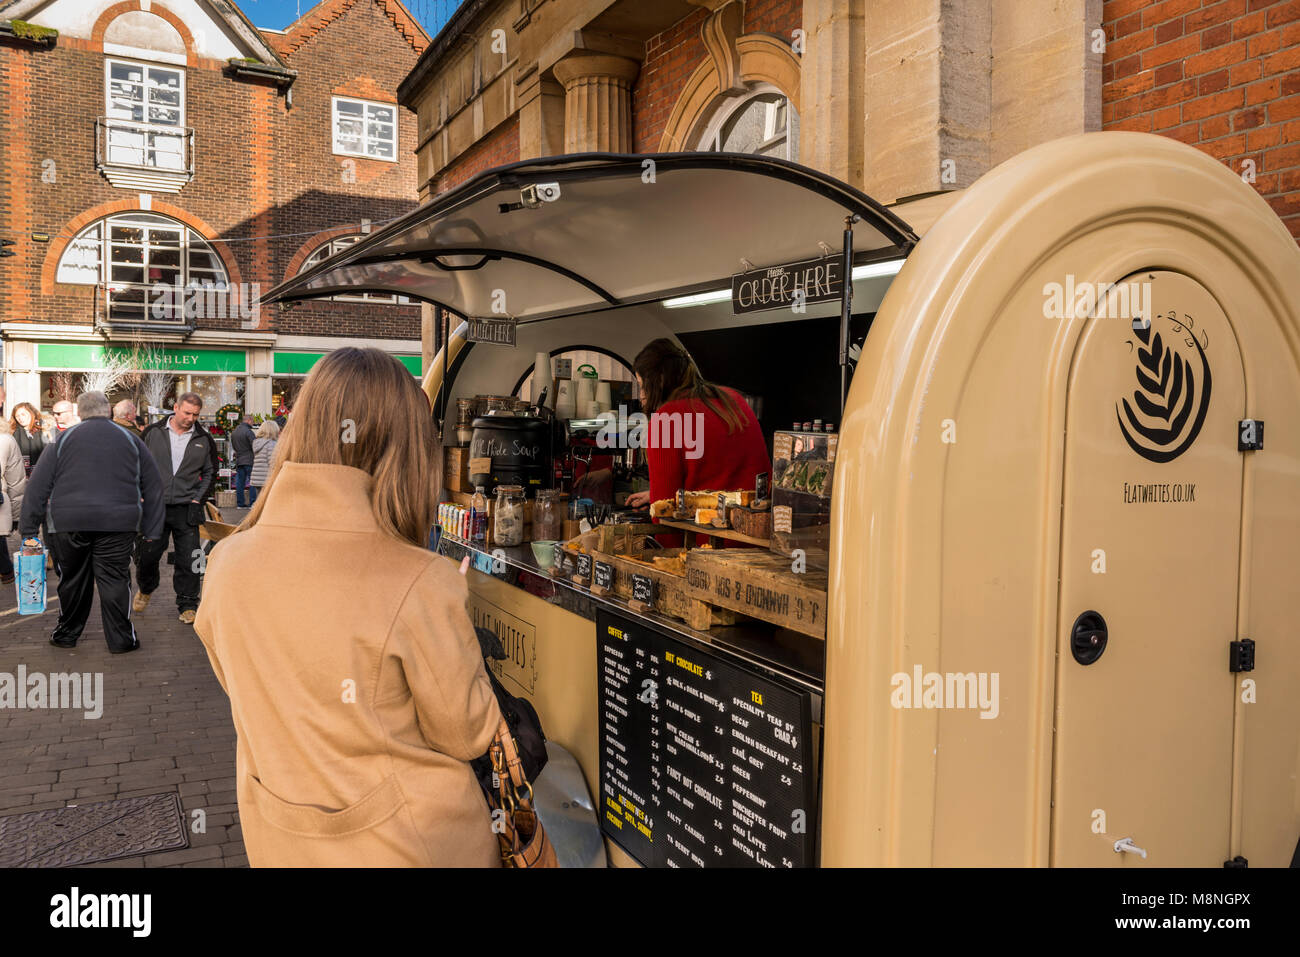 Ein Wagen serviert heiße und kalte Getränke, Snacks und Essen im Stadtzentrum von Winchester, Hampshire, UK Stockfoto